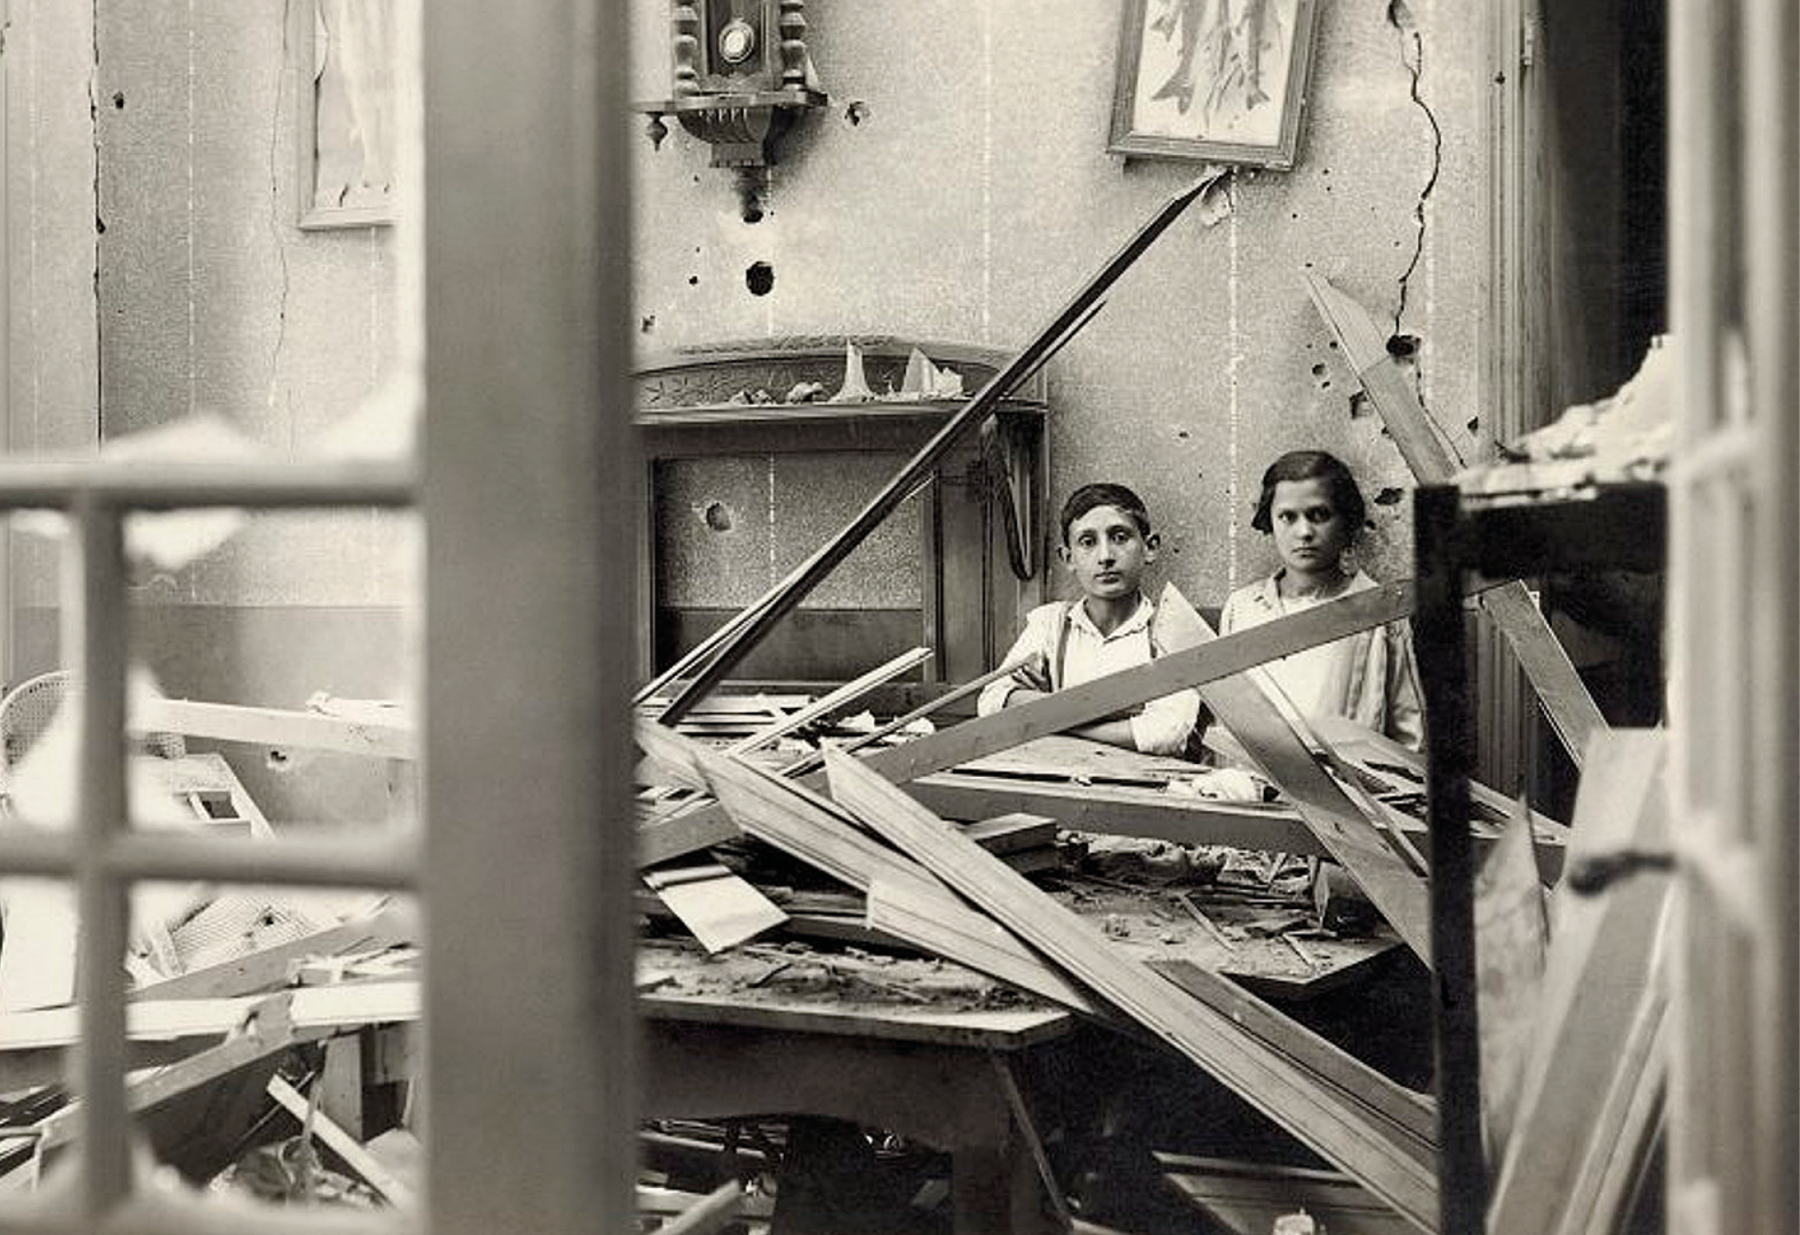 Fotografia em preto e branco. Duas pessoas, sentadas lado a lado, no interior de um cômodo em destroços, com paredes rachadas, pedaços de madeira sobre o chão, e móveis destruídos.